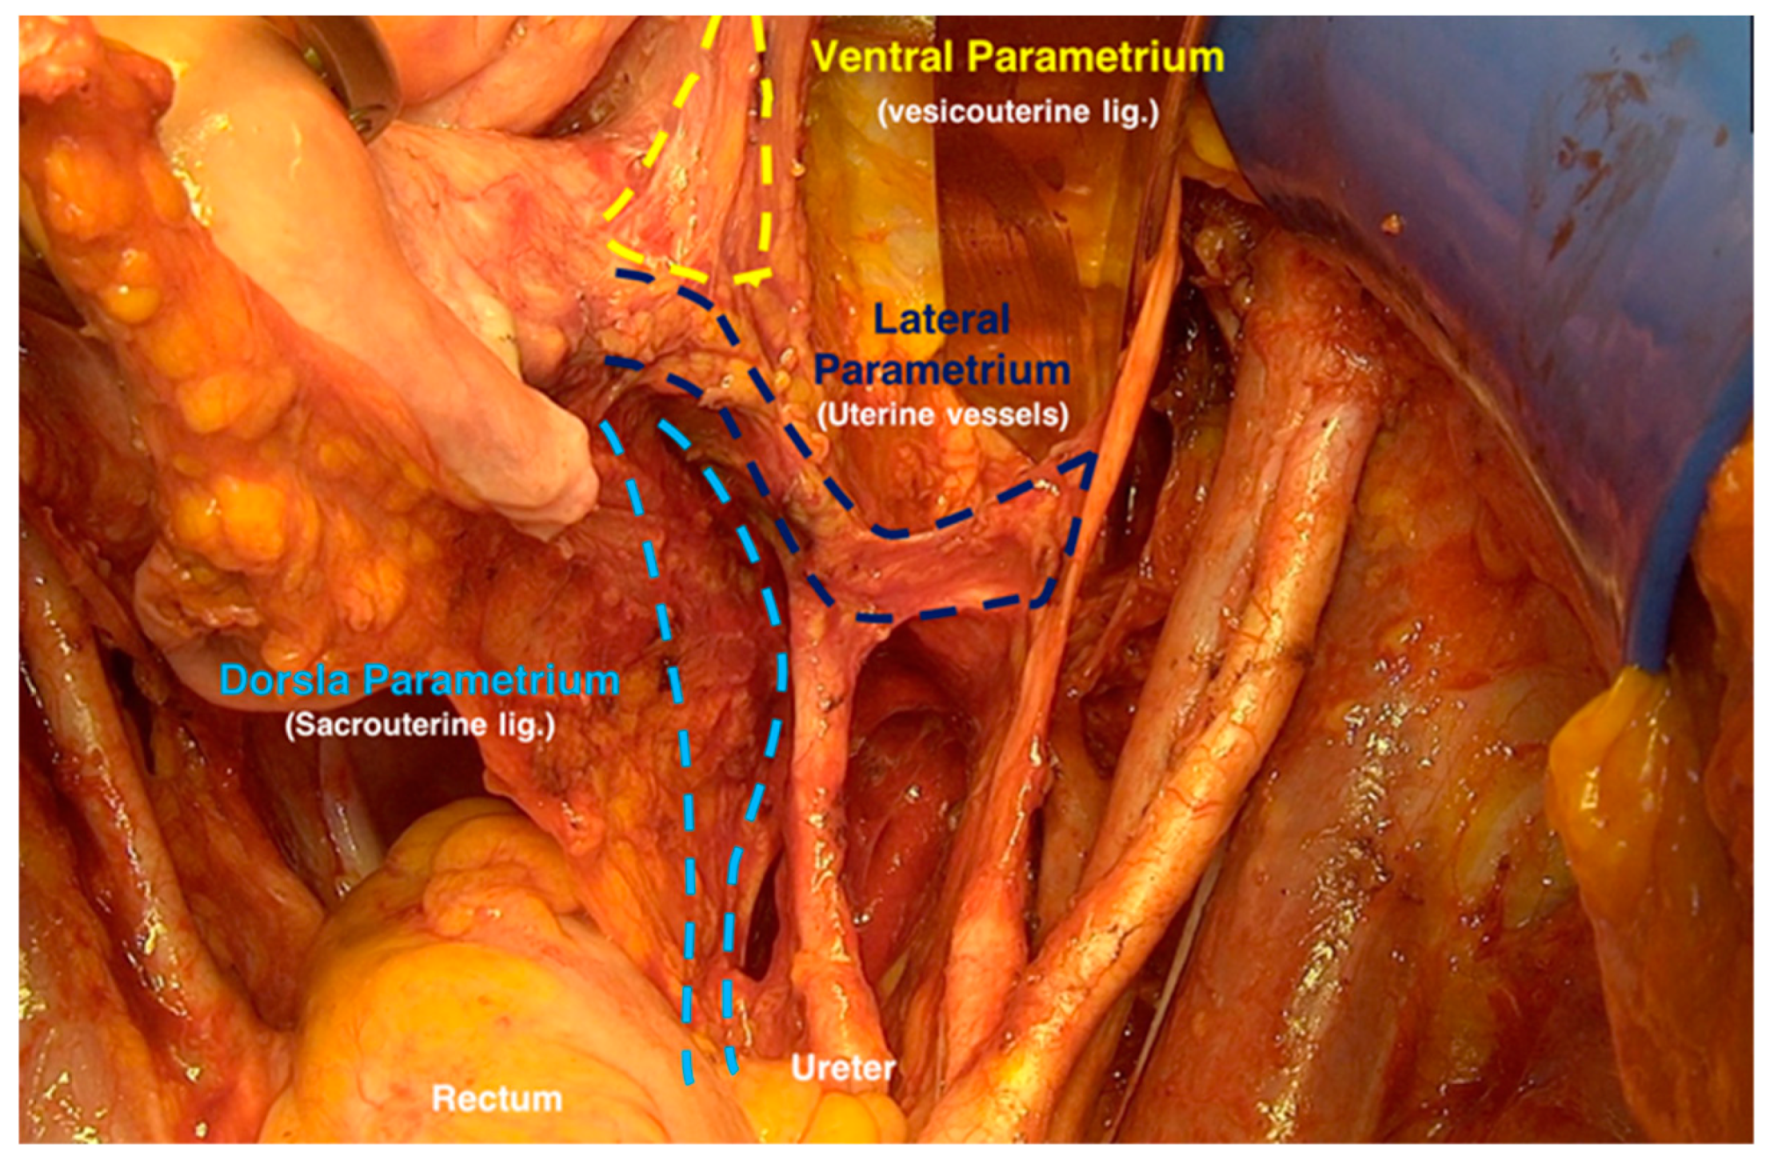 hysterectomy anatomy